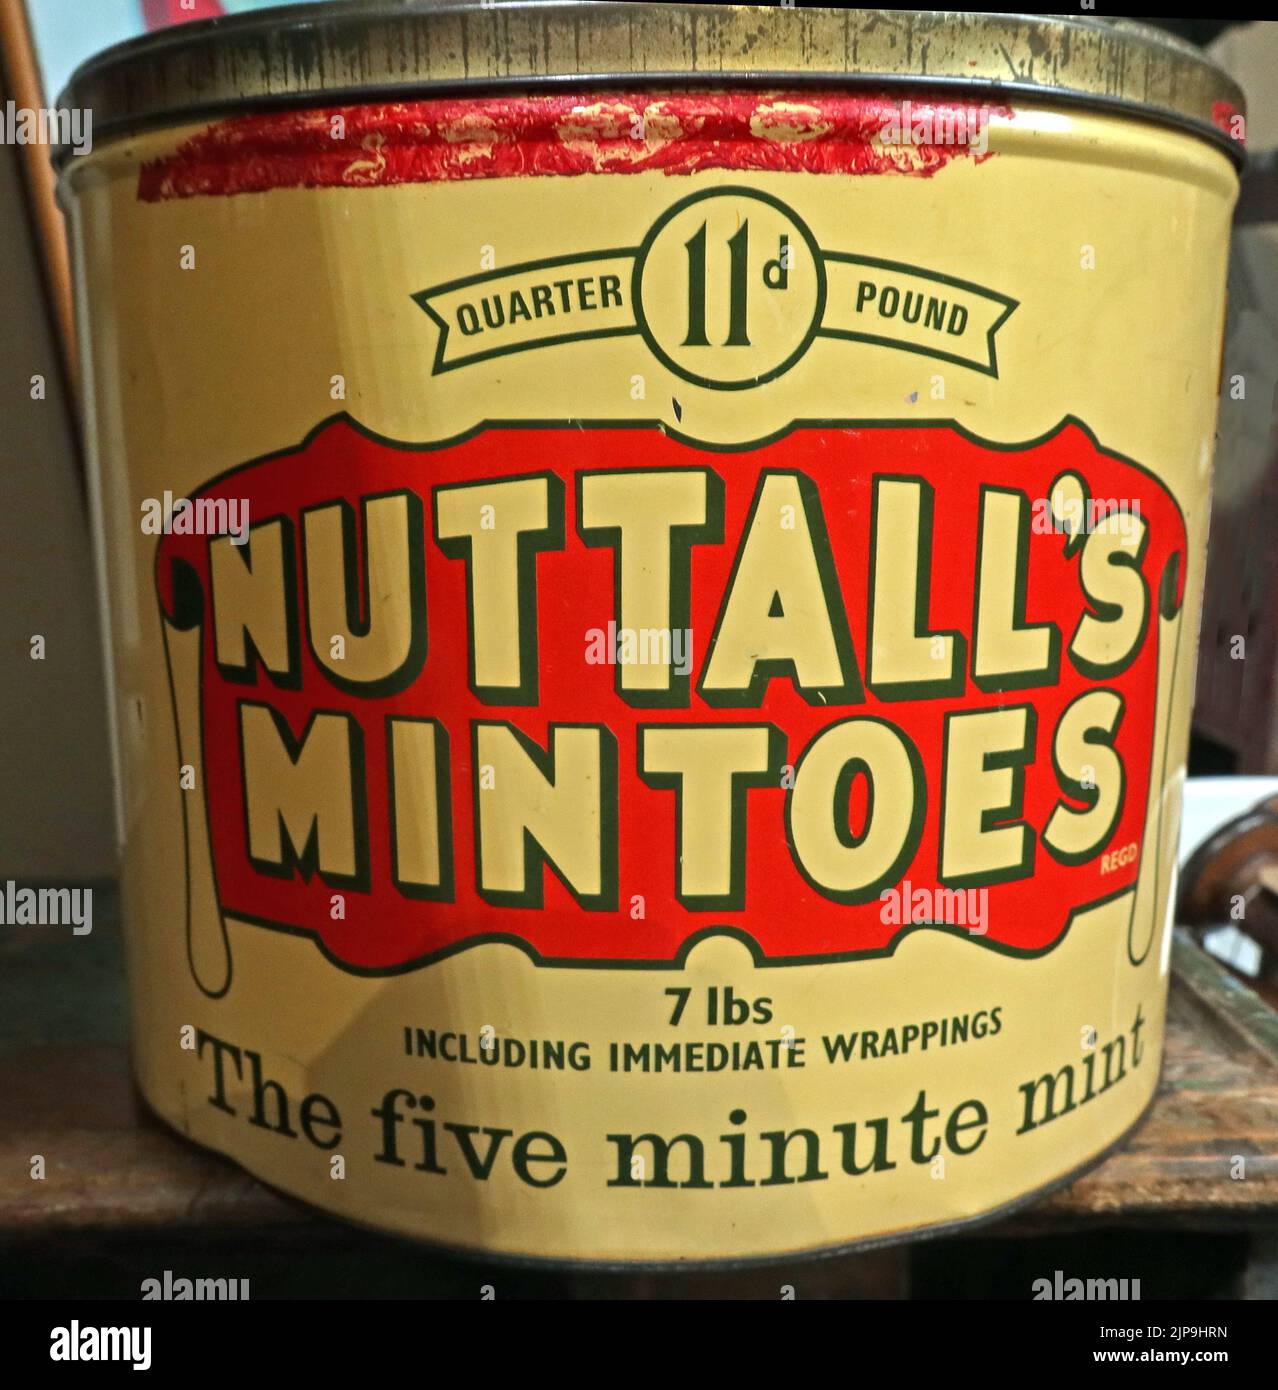 7lb Dose Nuttalls Mintoes, die 5-Minuten-Münze, traditionelle britische gekochte Süßigkeiten, in einer cremefarbenen und roten Verpackung ab 1965 Stockfoto